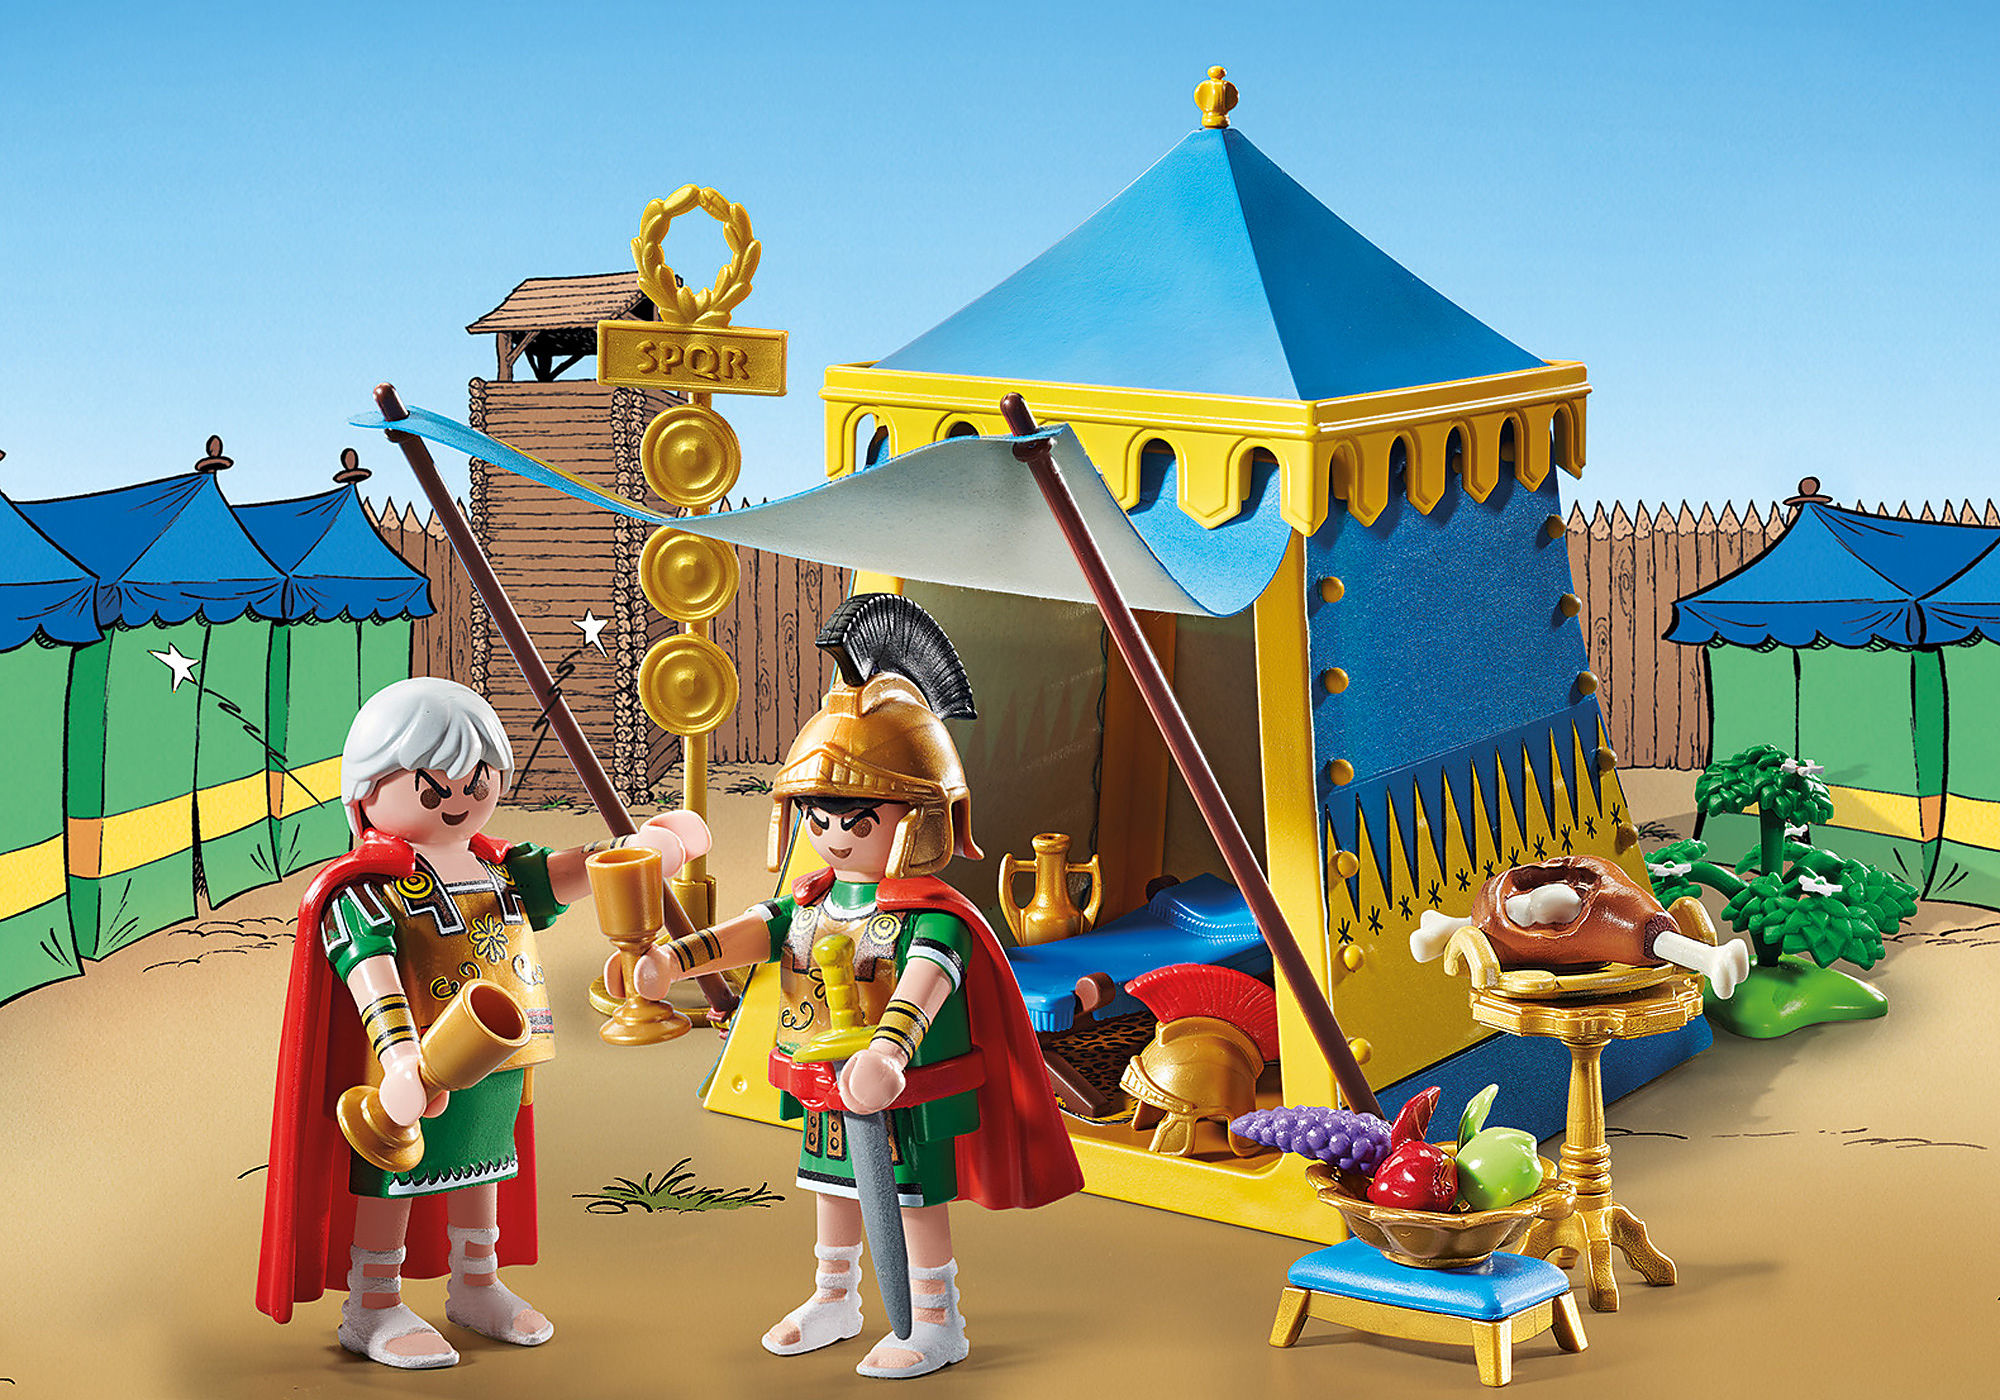 71269 - Playmobil Astérix - Le gâteau empoisonné d'Amonbofis Playmobil :  King Jouet, Playmobil Playmobil - Jeux d'imitation & Mondes imaginaires